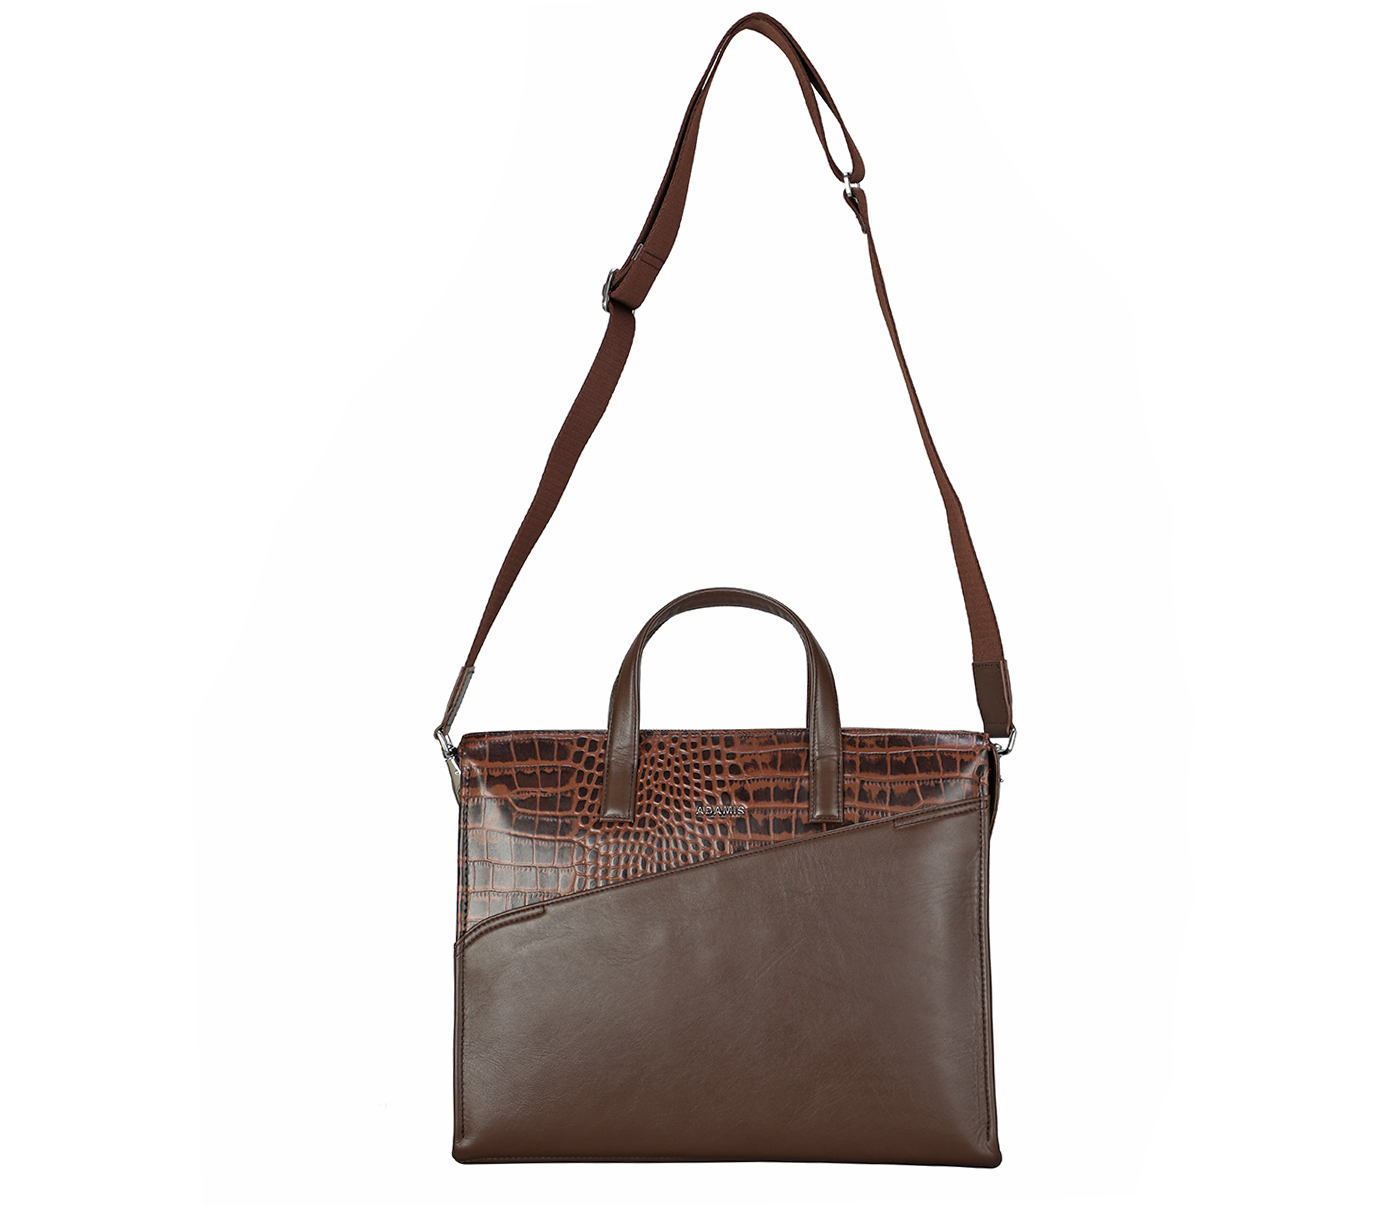 Portfolio / Laptop Bag-Sergio-Laptop cum portfolio slim bag in Genuine Leather - Brown